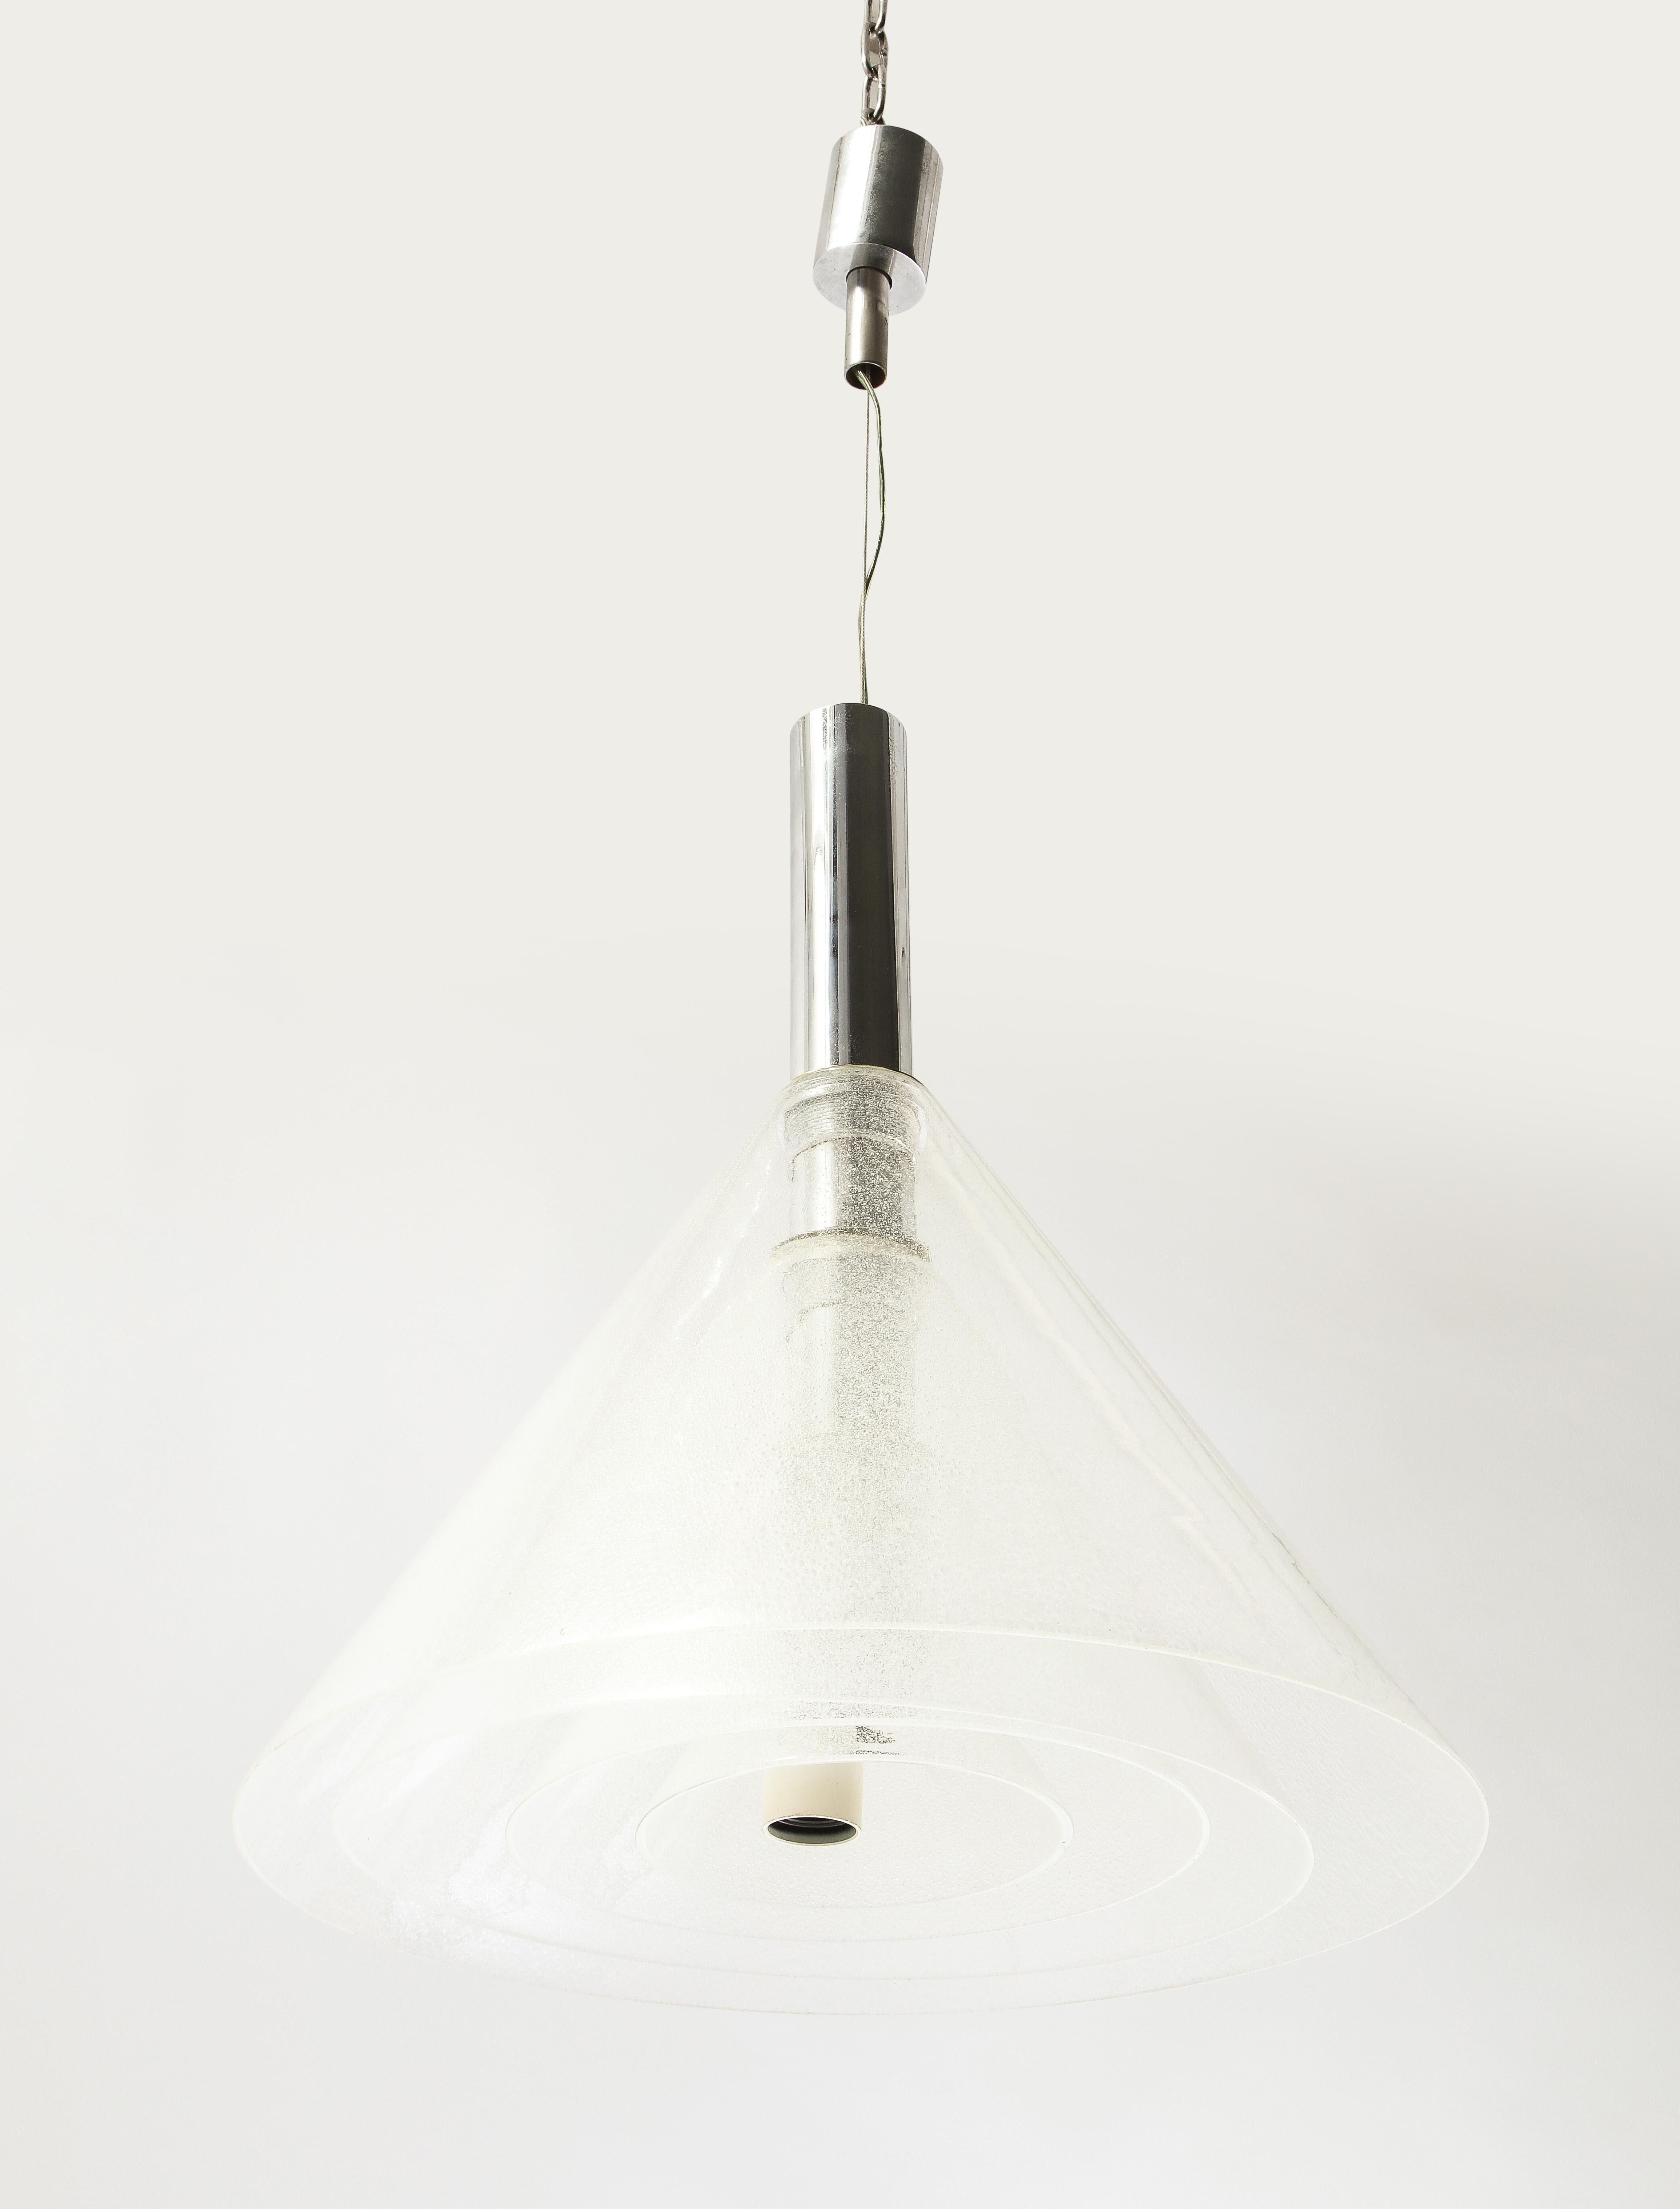 Alberto Nason Murano Glass Layered Concentric Cone Pendant, Italy 1970's For Sale 2